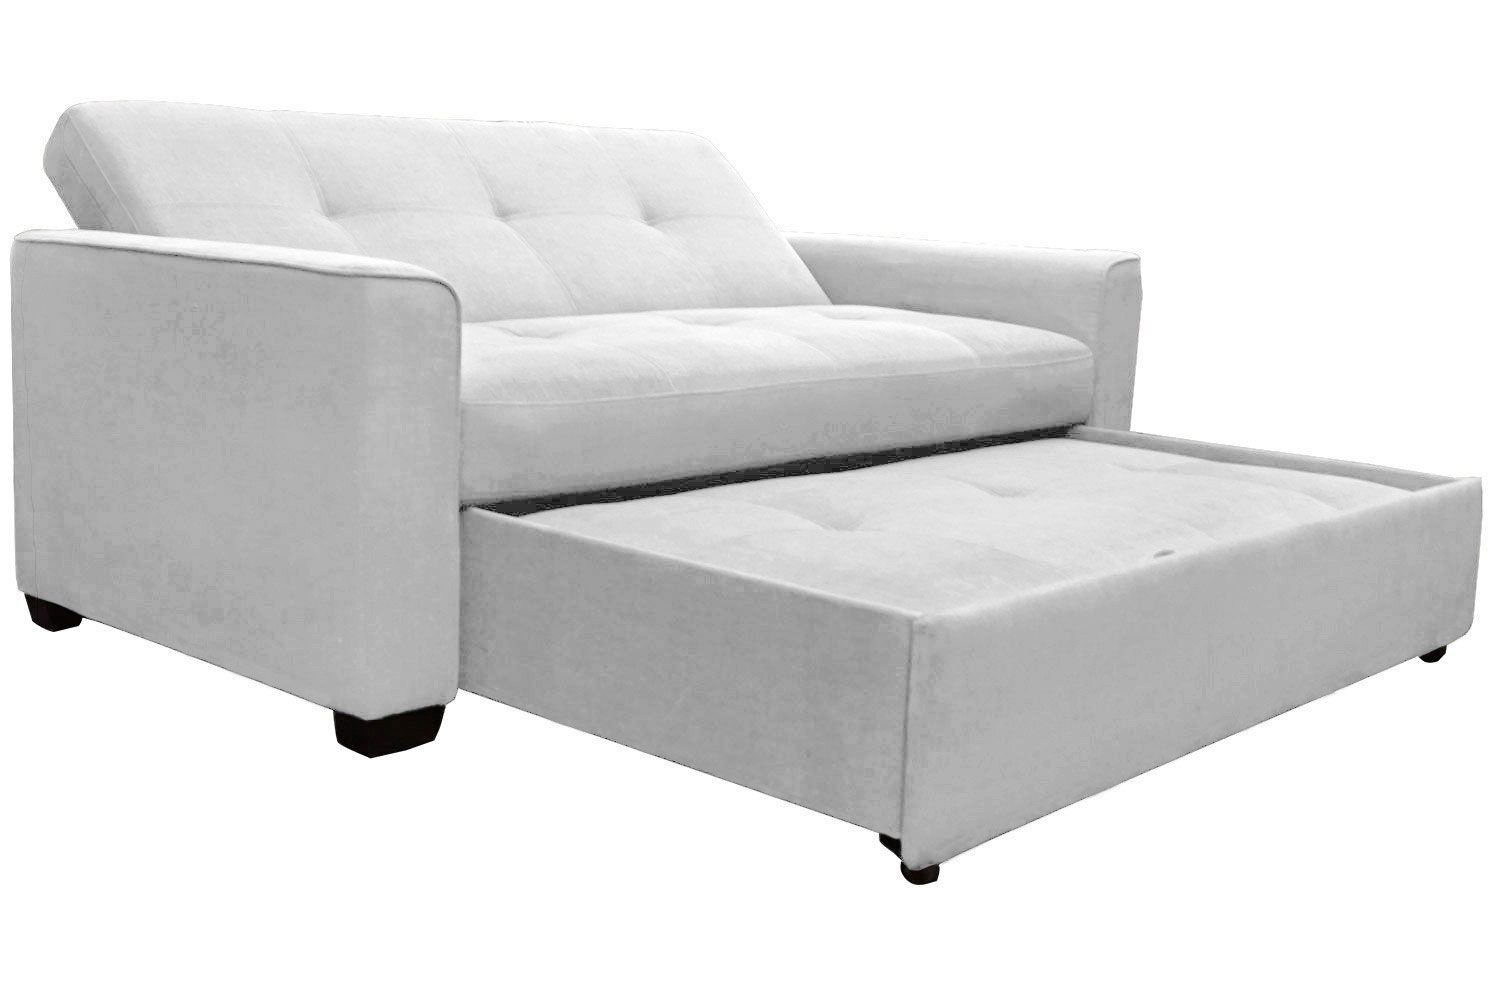 Eco Sofa Natural Latex Upholstered